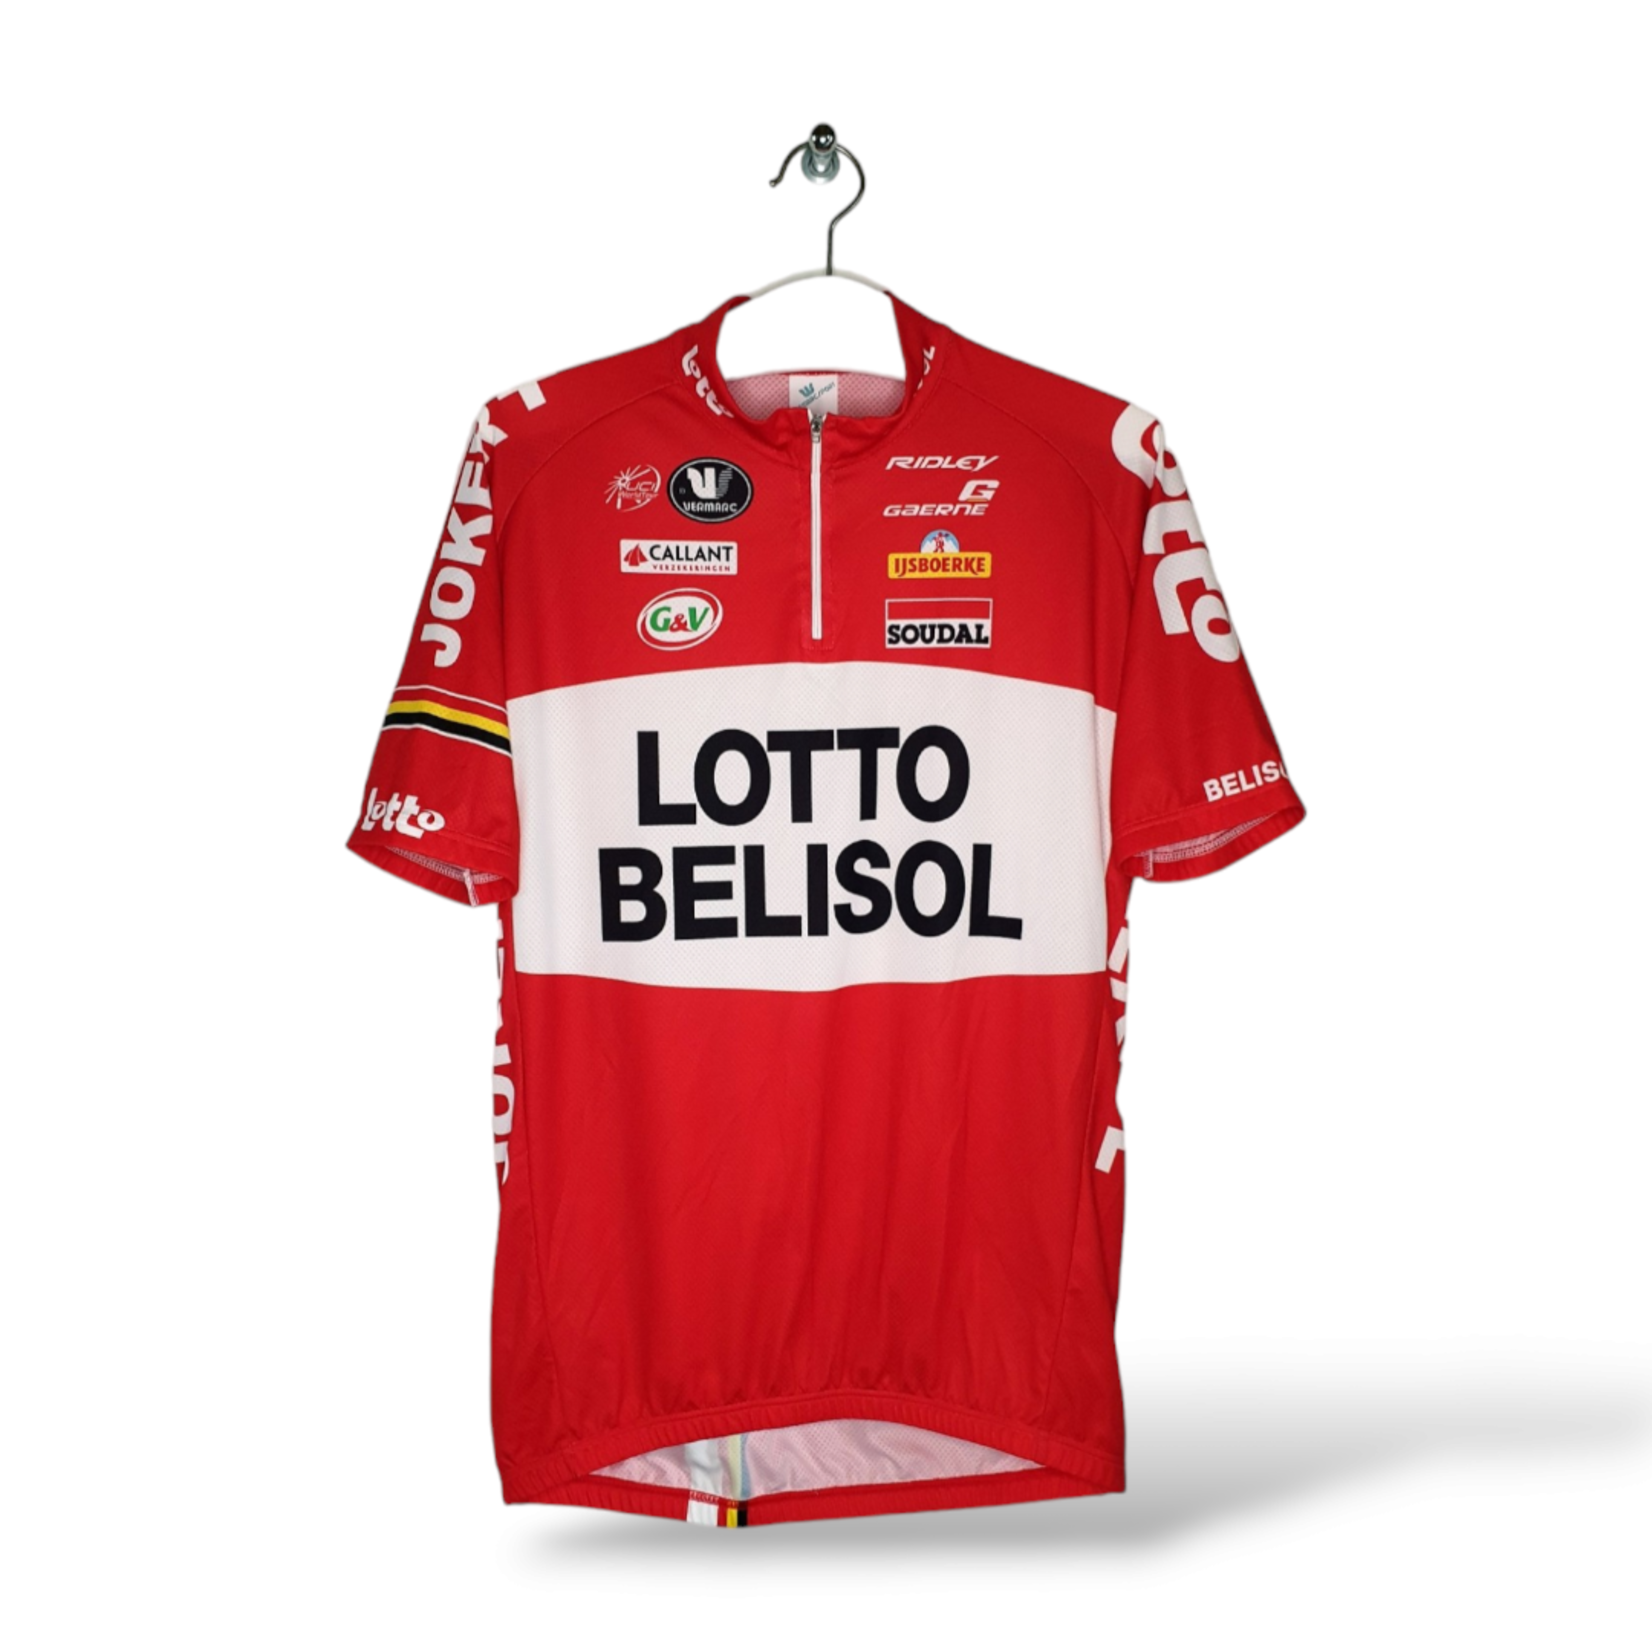 Vermarc Original Vermarc vintage cycling jersey Lotto Belisol 2014